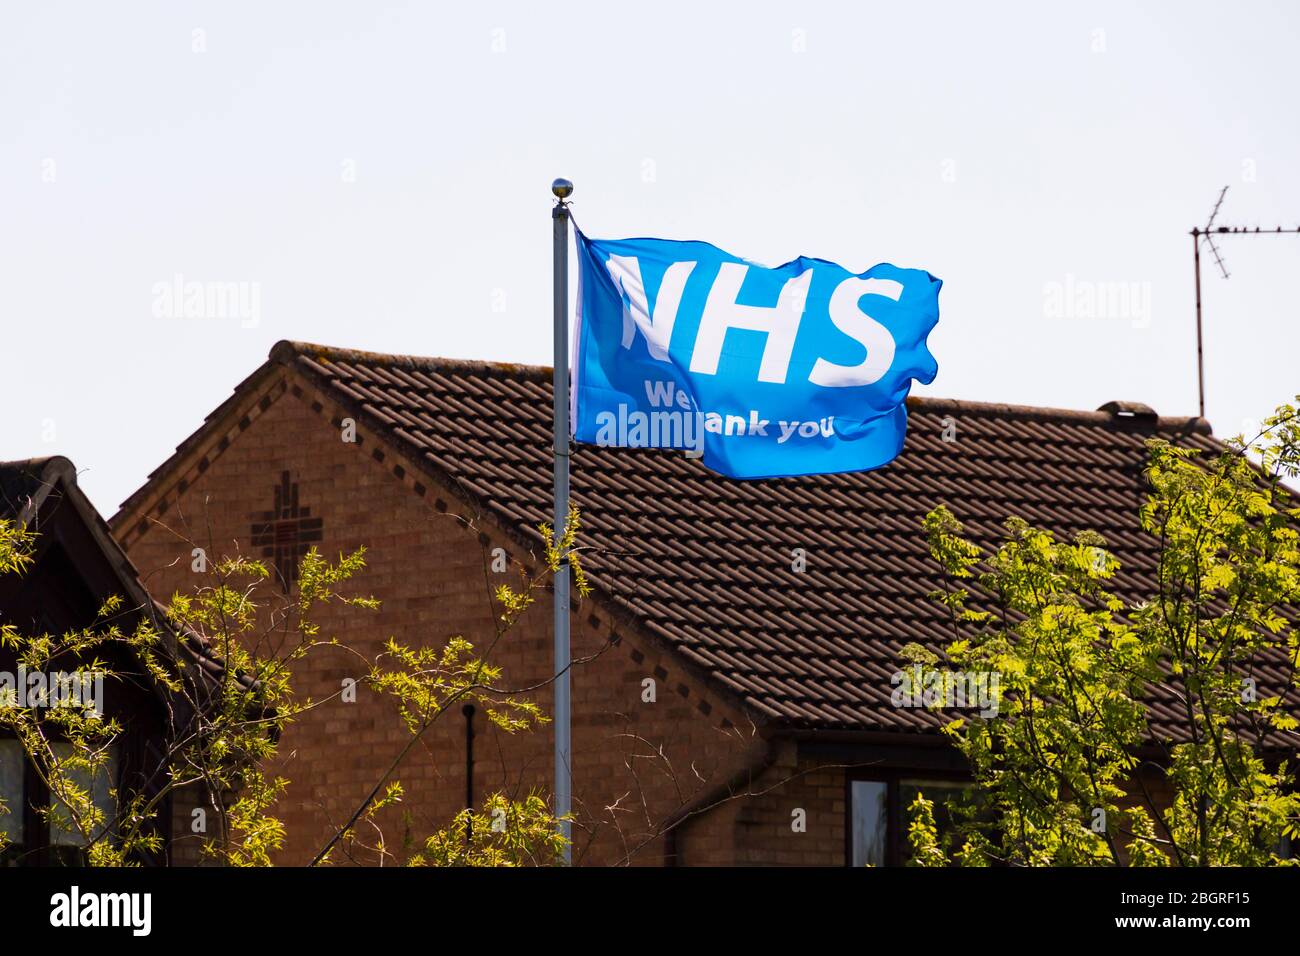 Merci le drapeau NHS volant dans une maison privée pendant le virus Corona, Covid-19. Pandémie. Grantham, Lincolnshire, Angleterre. Avril 2020 Banque D'Images